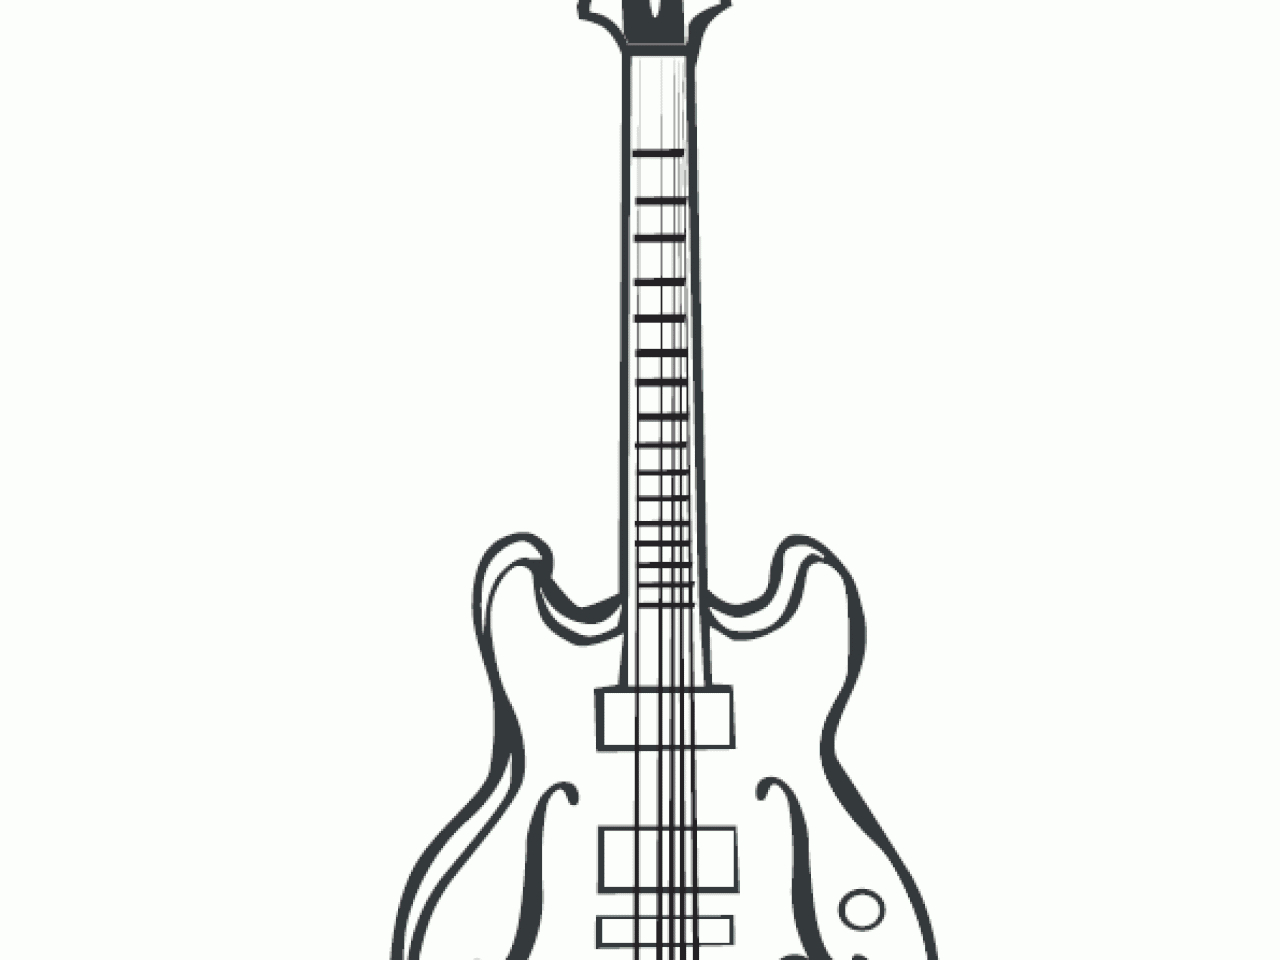 Dessin Guitare Rock Facile - Dessin Facile für Coloriage Dessin Guitare